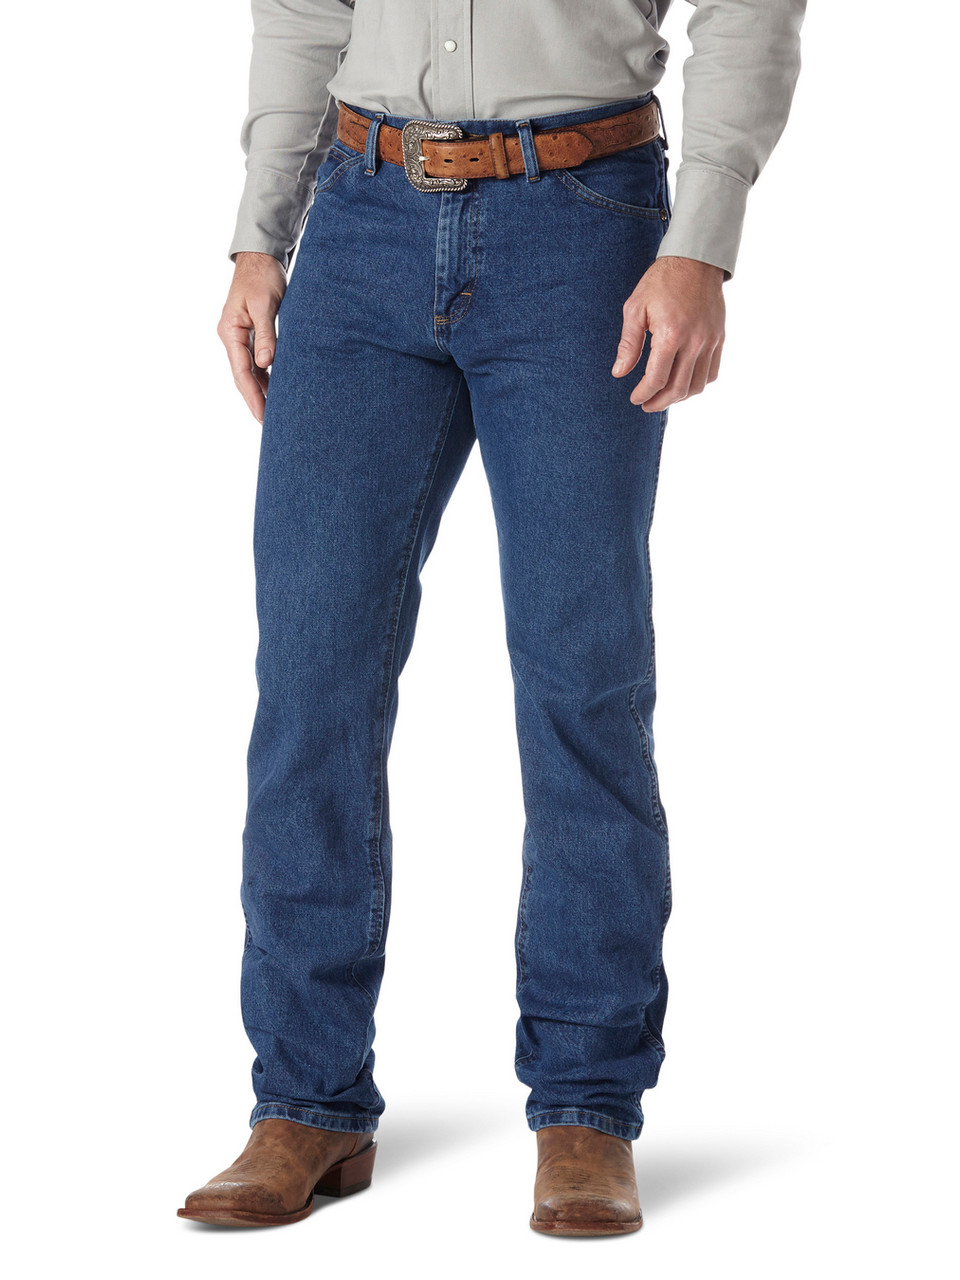 Wrangler Performance Jeans- Men's Western Denim